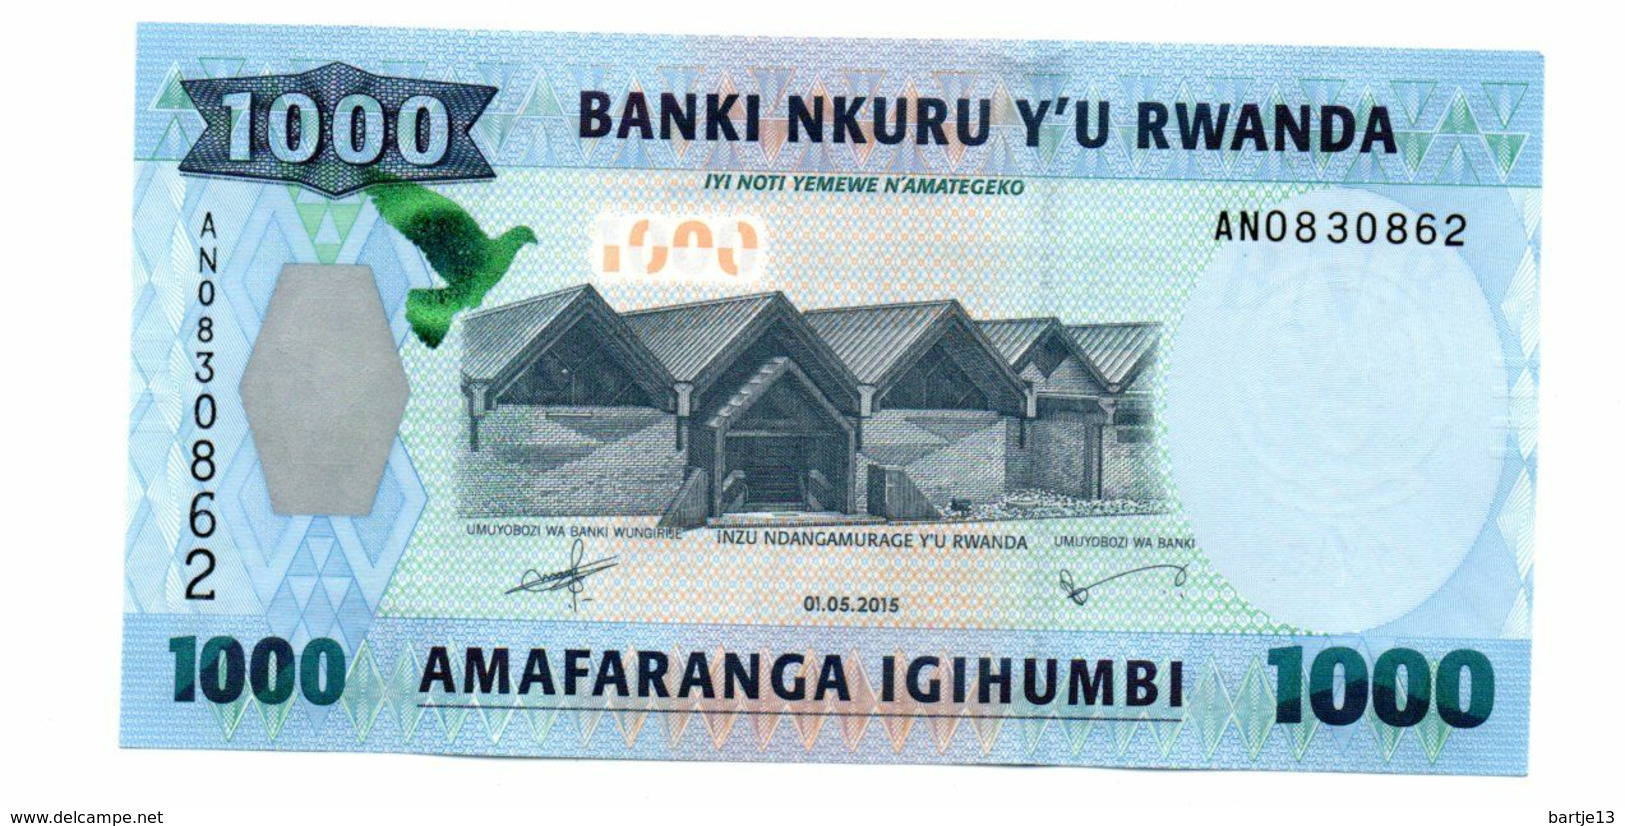 RWANDA 1000 FRANCS PICK 31 UNCIRCULATED - Rwanda